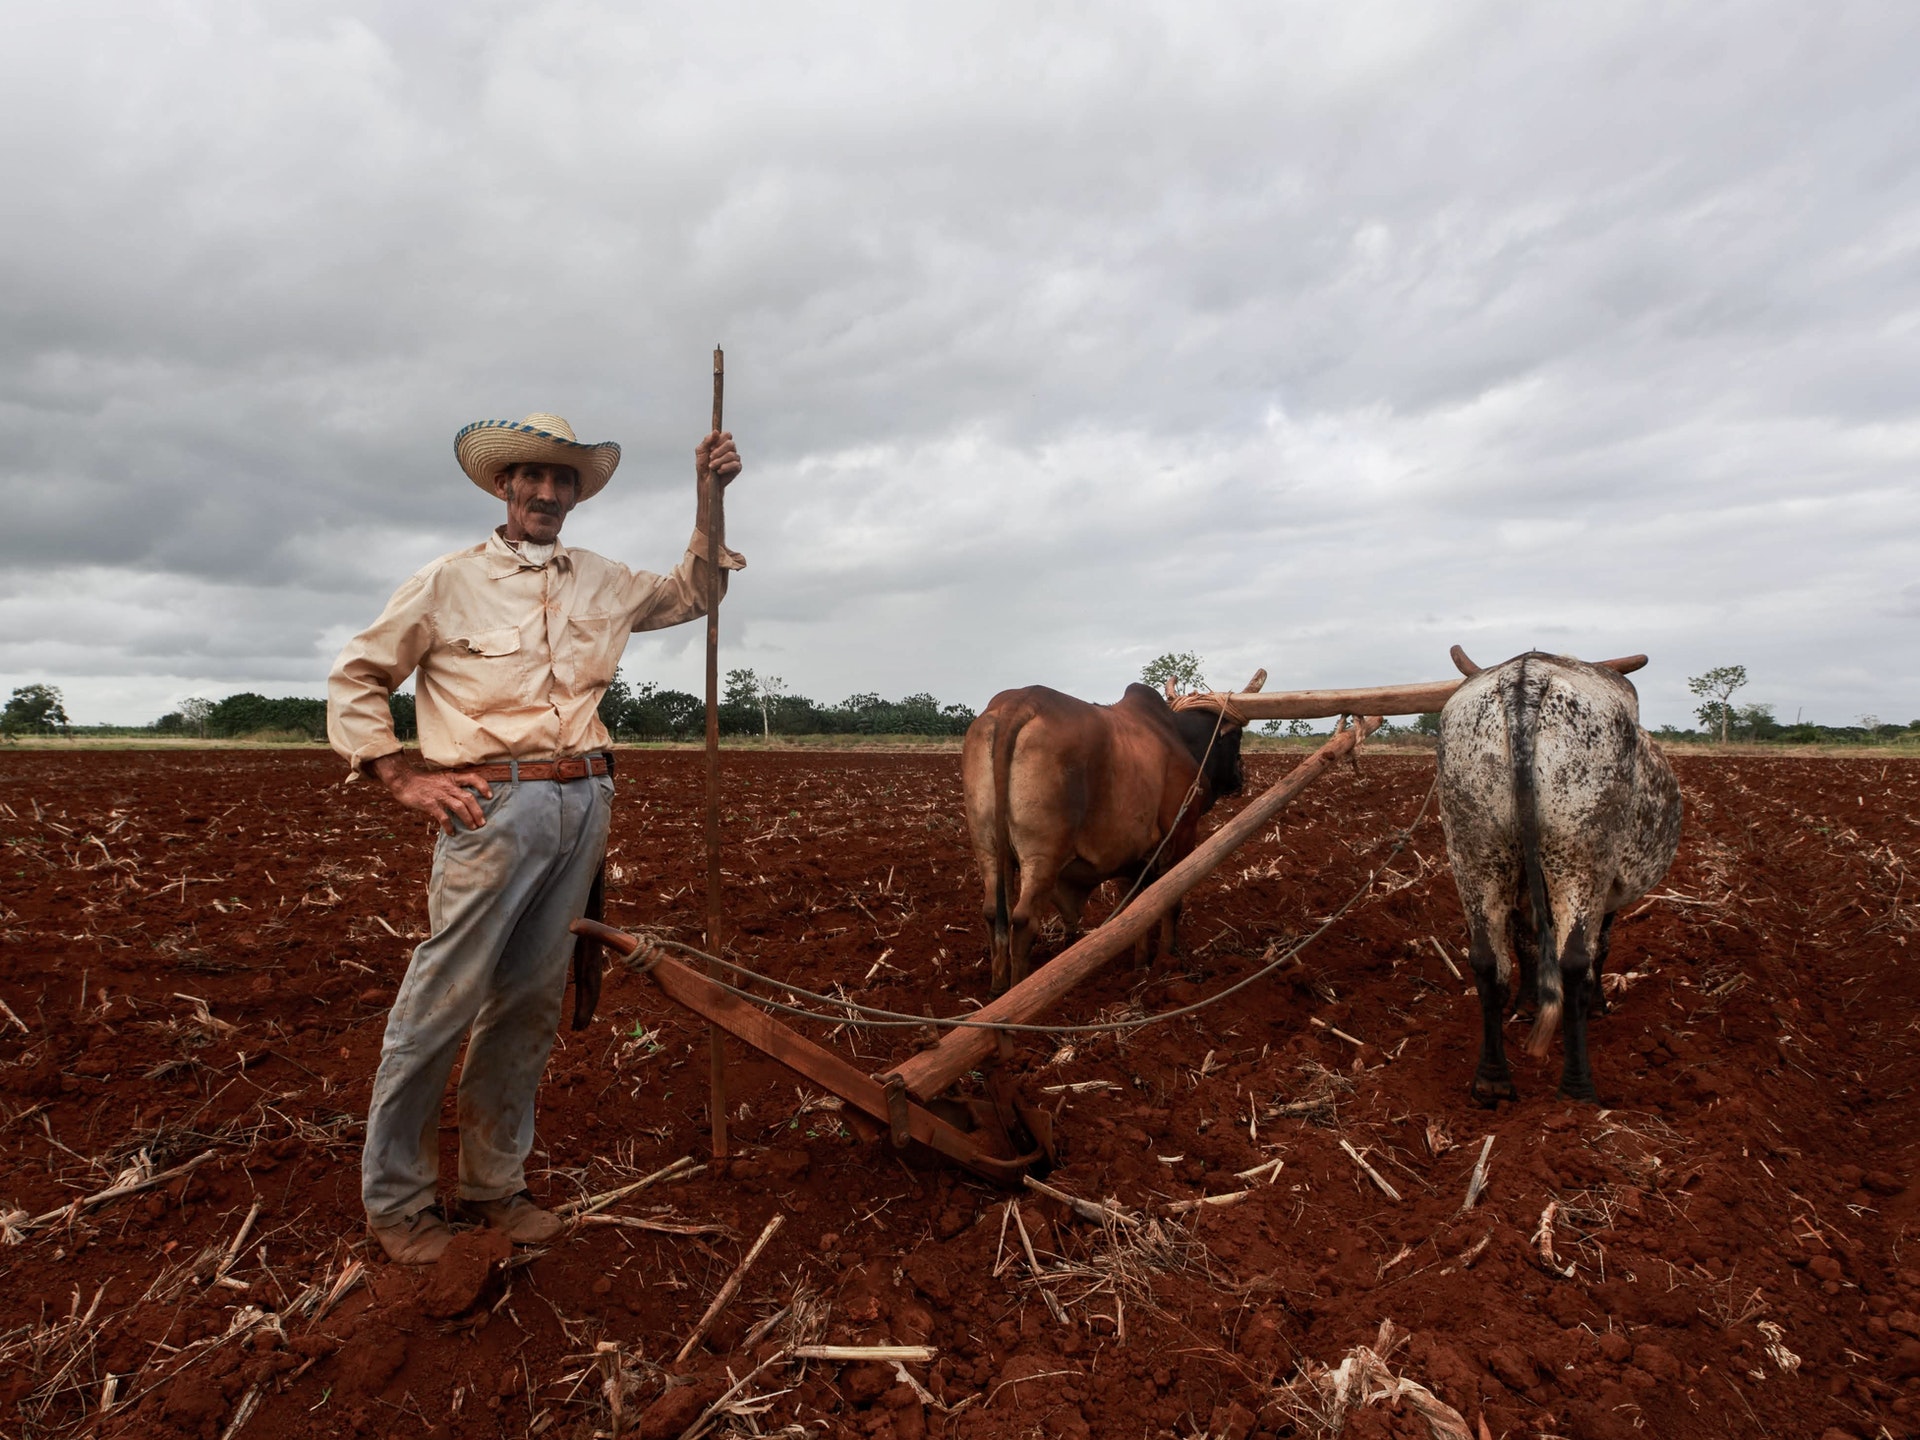 Homem do campo arando um terreno com dois bois. Imagem ilustrativa do texto sobre franquias online de sucesso.